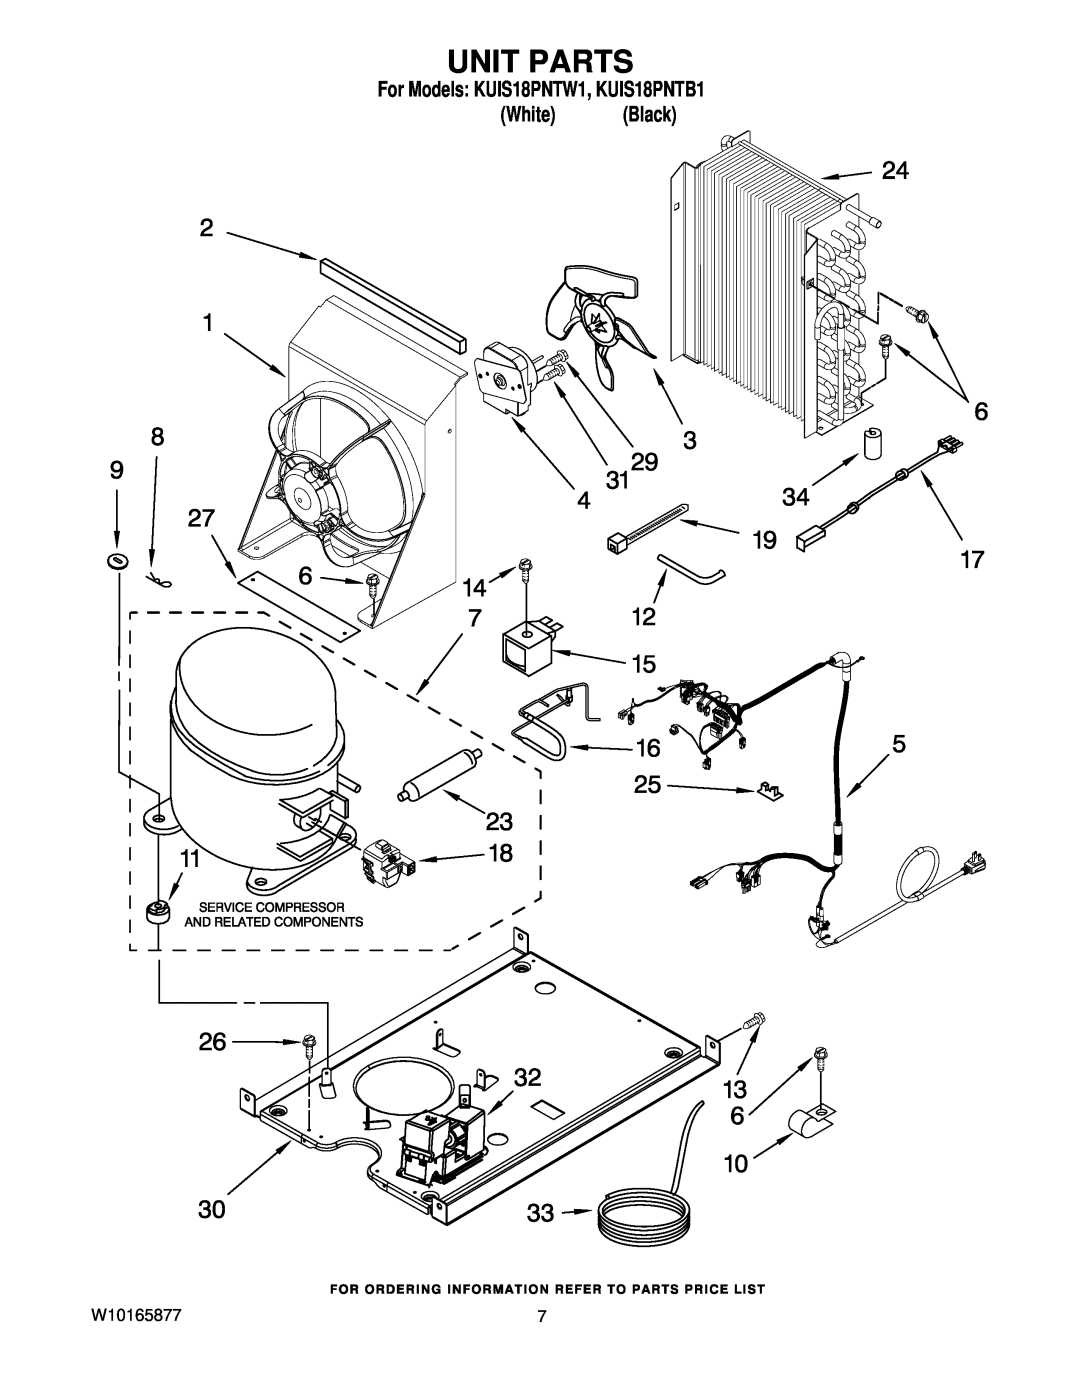 KitchenAid manual Unit Parts, For Models KUIS18PNTW1, KUIS18PNTB1 White Black 